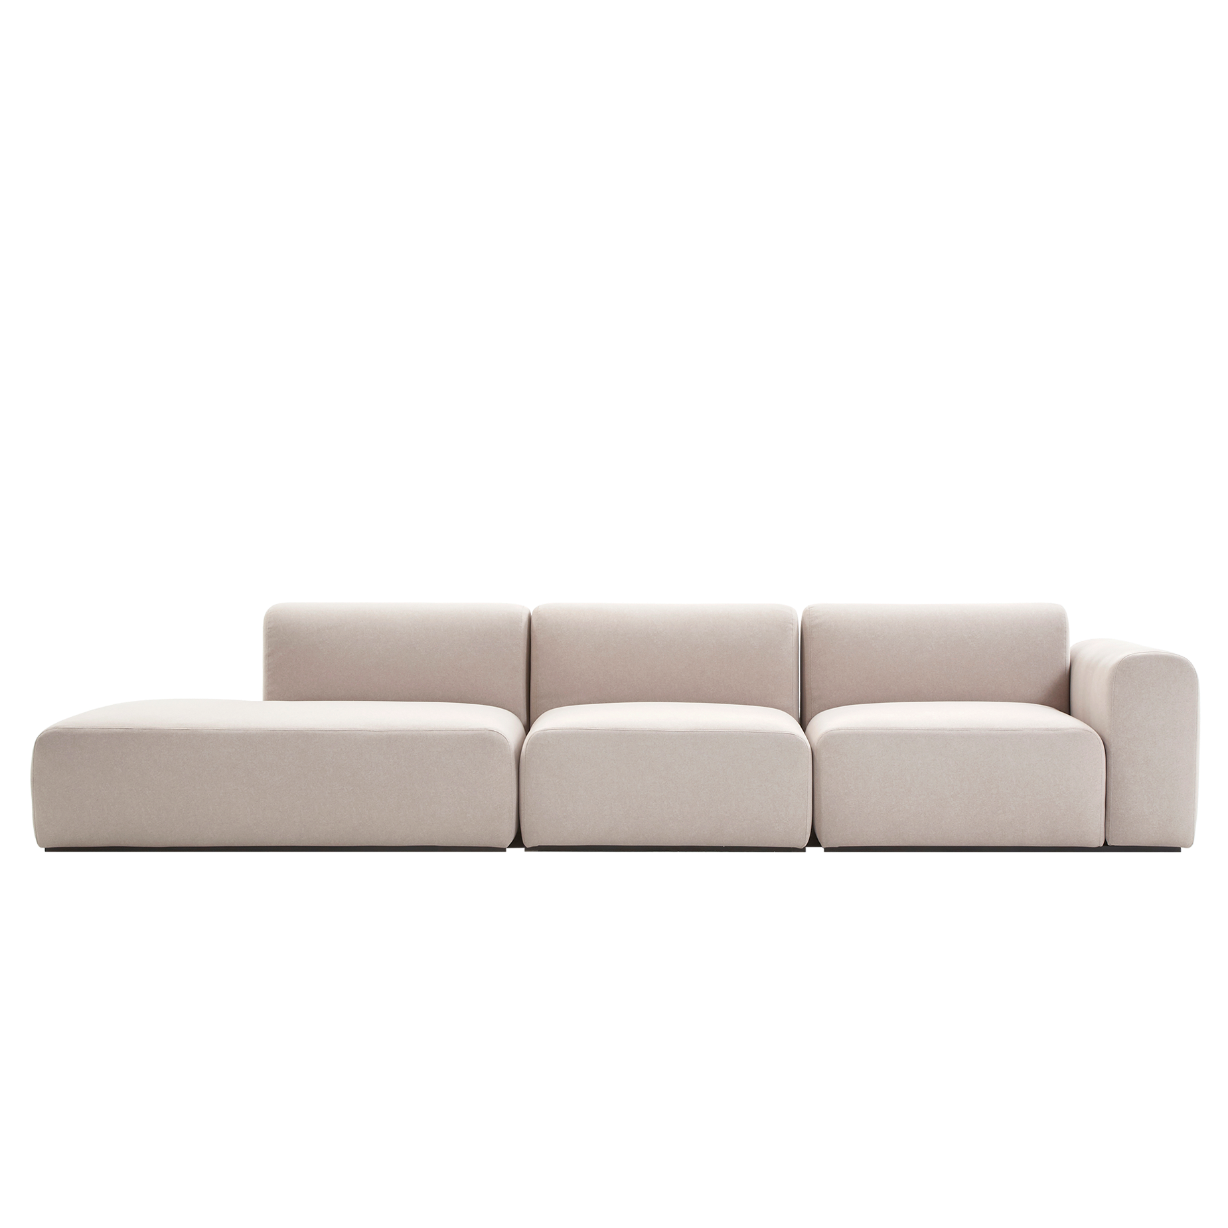 (주)도이치[3주 주문제작]    DOICH ® Aquaclean PEN3 modular couch sofa  도이치 Pen3  4인 카우치 소파 ( 카우치+1인+1.5인) ) /(스페인 아쿠아클린)  [3주 주문제작]